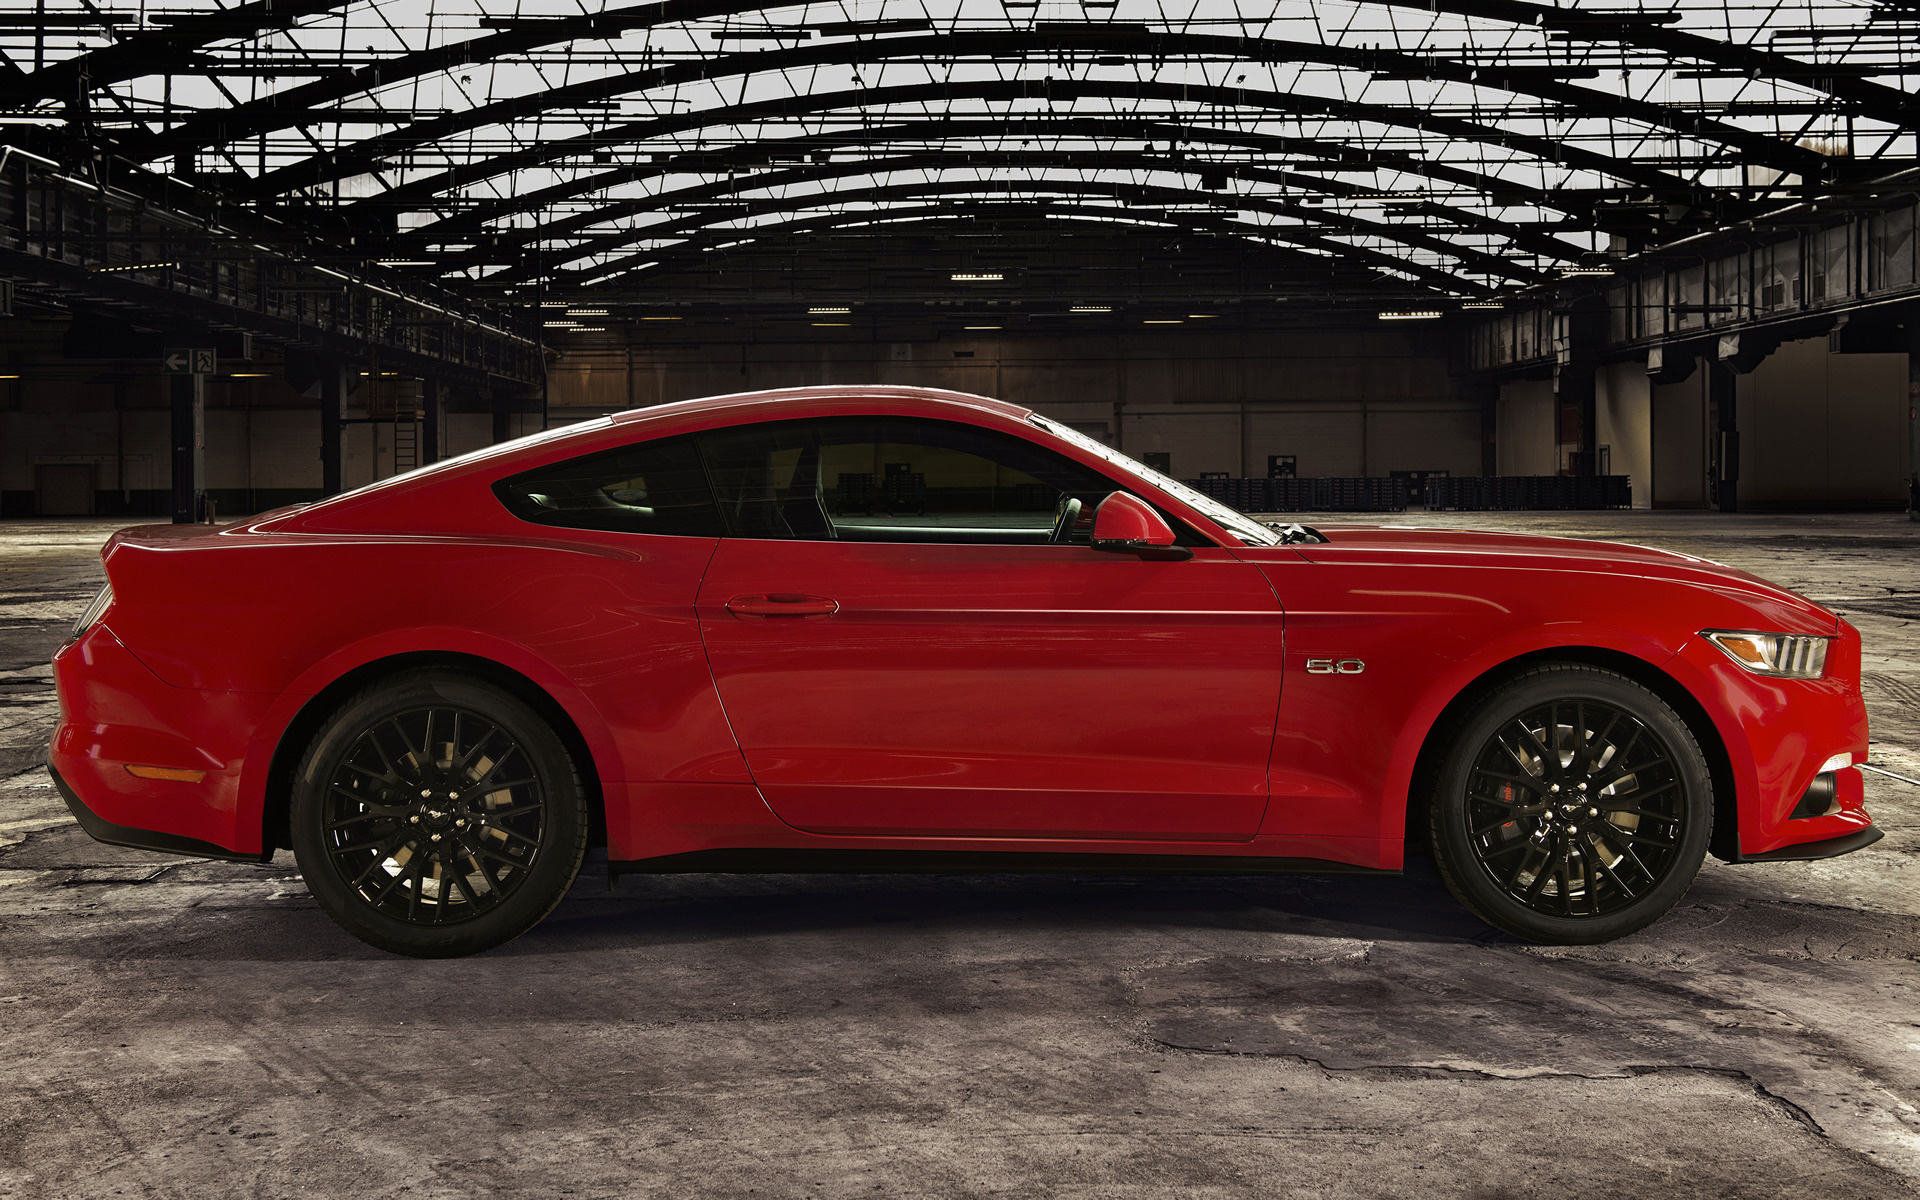 Ford Mustang (2015) цена и характеристики, фотографии...